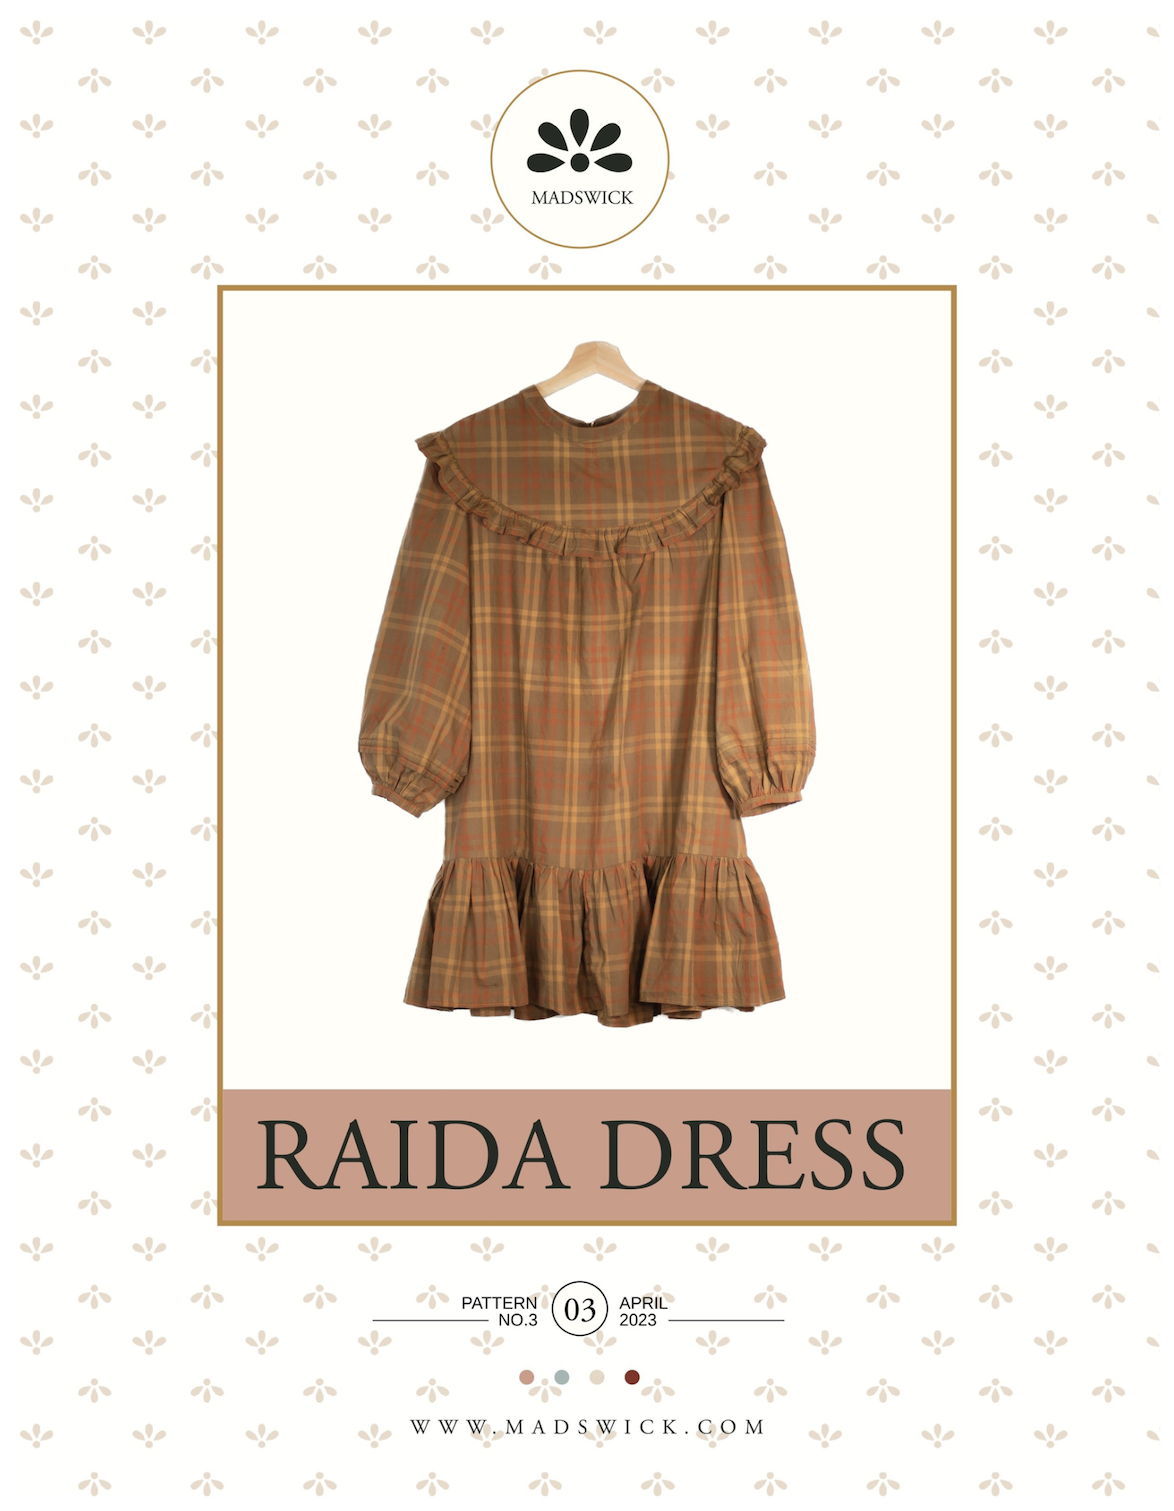 Madswick Raida Dress